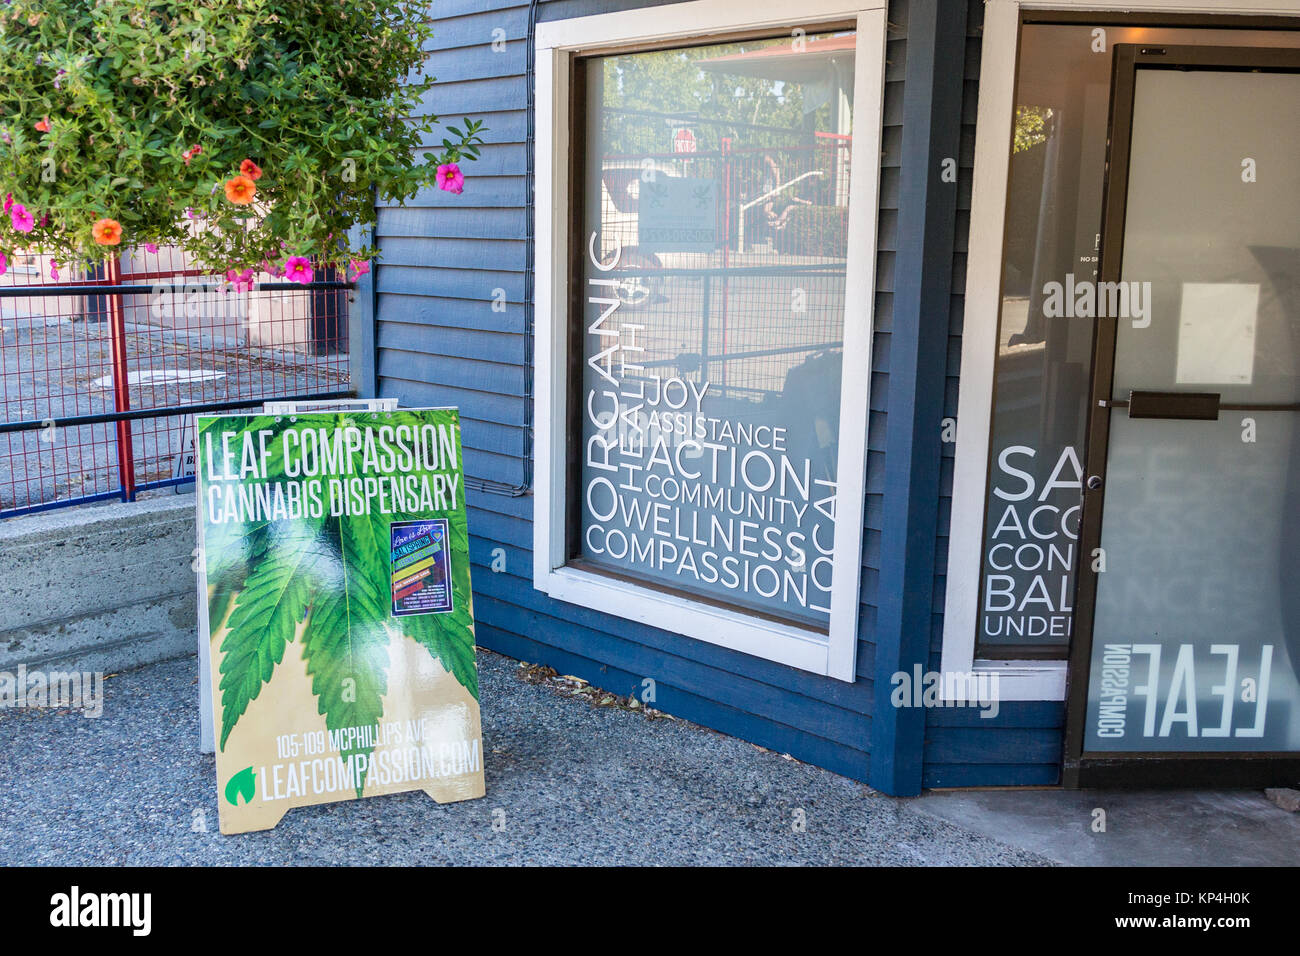 Molla di sale isola, Canada - Agosto 28th, 2017: l'ingresso della molla di sale la compassione del dispensario di cannabis in Salt Spring Island. Foto Stock